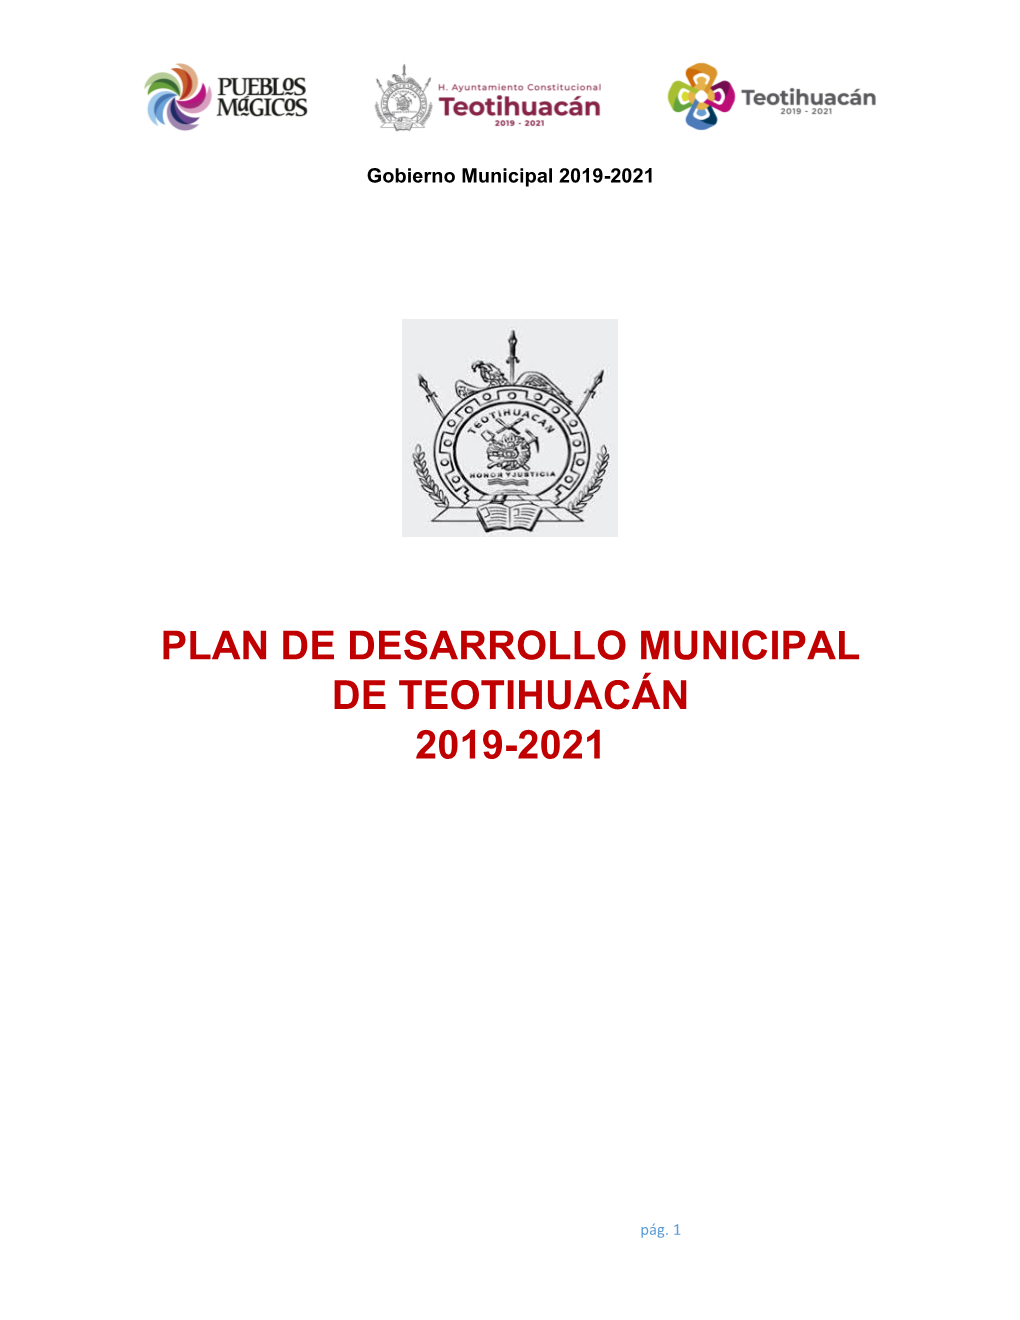 Plan De Desarrollo Municipal De Teotihuacán 2019-2021